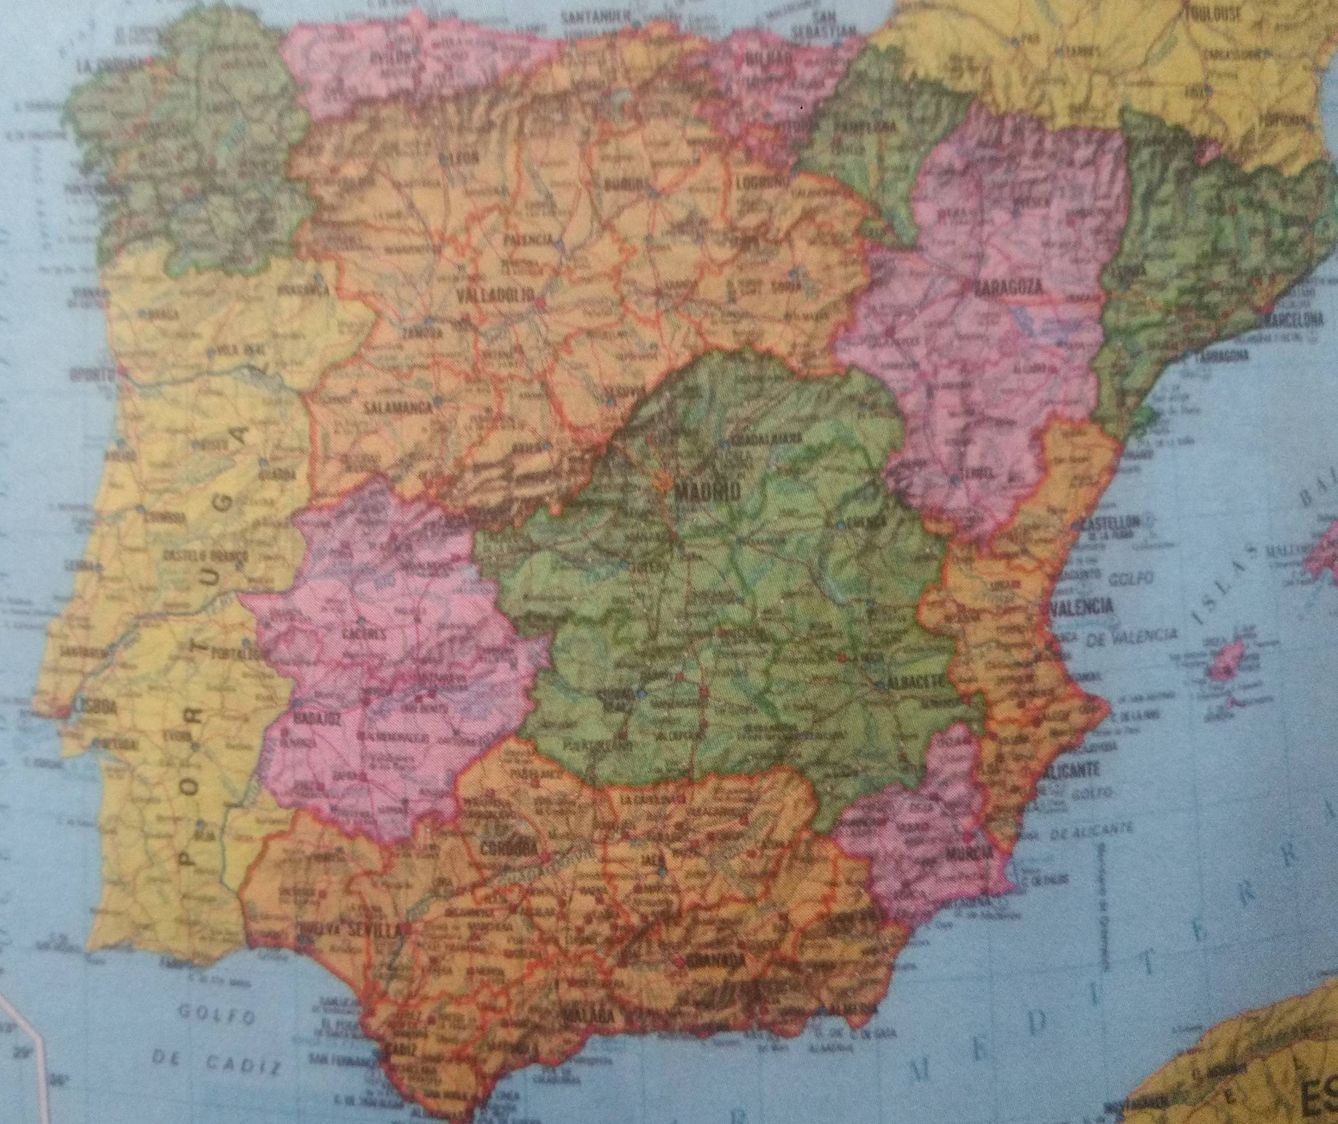 Mapa autonómico con Madrid en Castilla-La Mancha publicado durante la Transición (sacado del libro sobre el PGOU)  